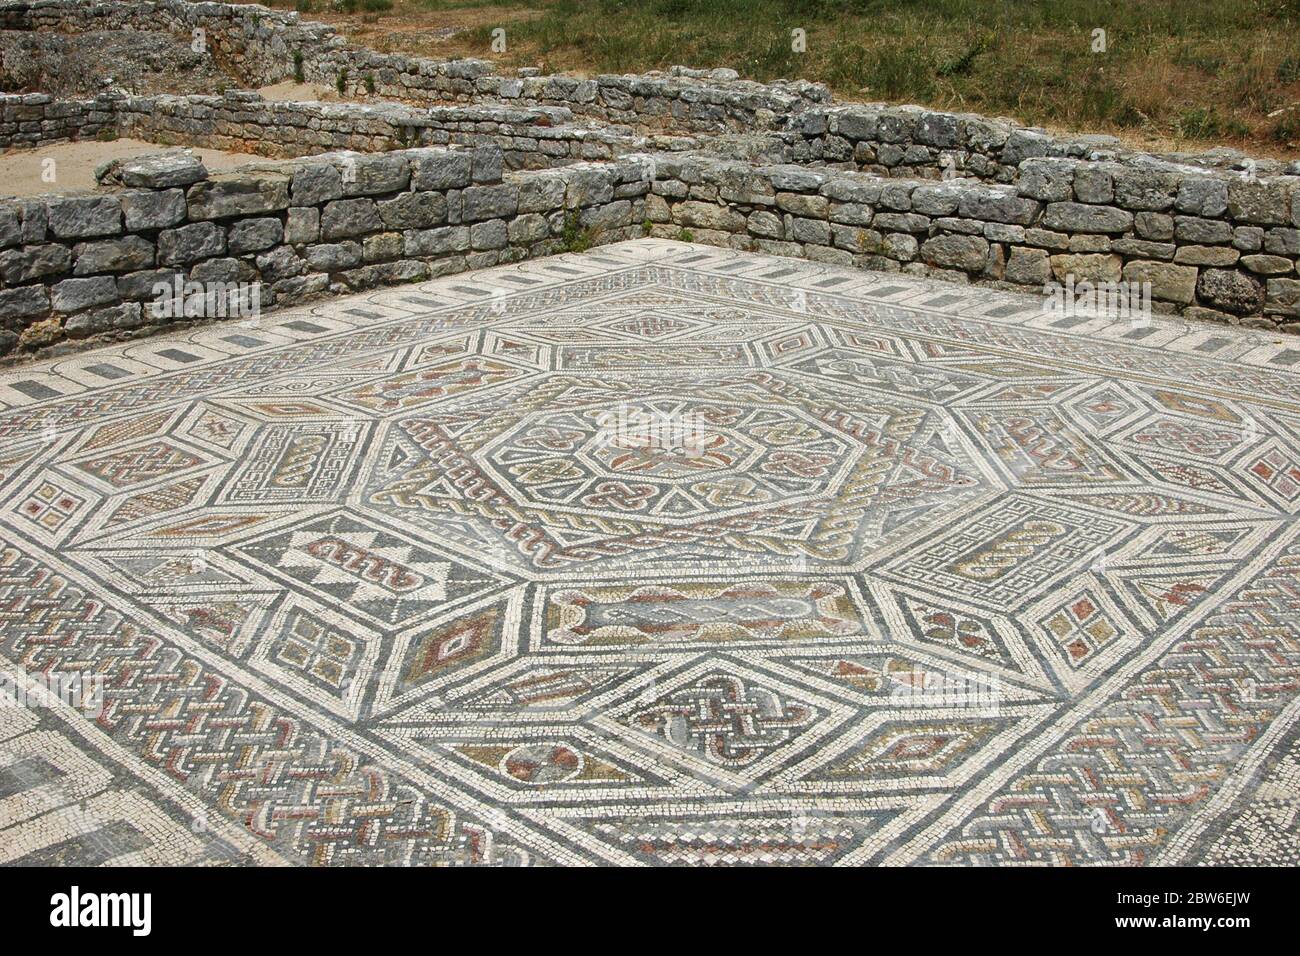 Antico mosaico di pavimento nelle rovine dell'insediamento romano di Conimbriga situato a Condeixa-a-Nova anche noto come Condeixa, una città e un comune nel distretto di Coimbra, Portogallo Foto Stock